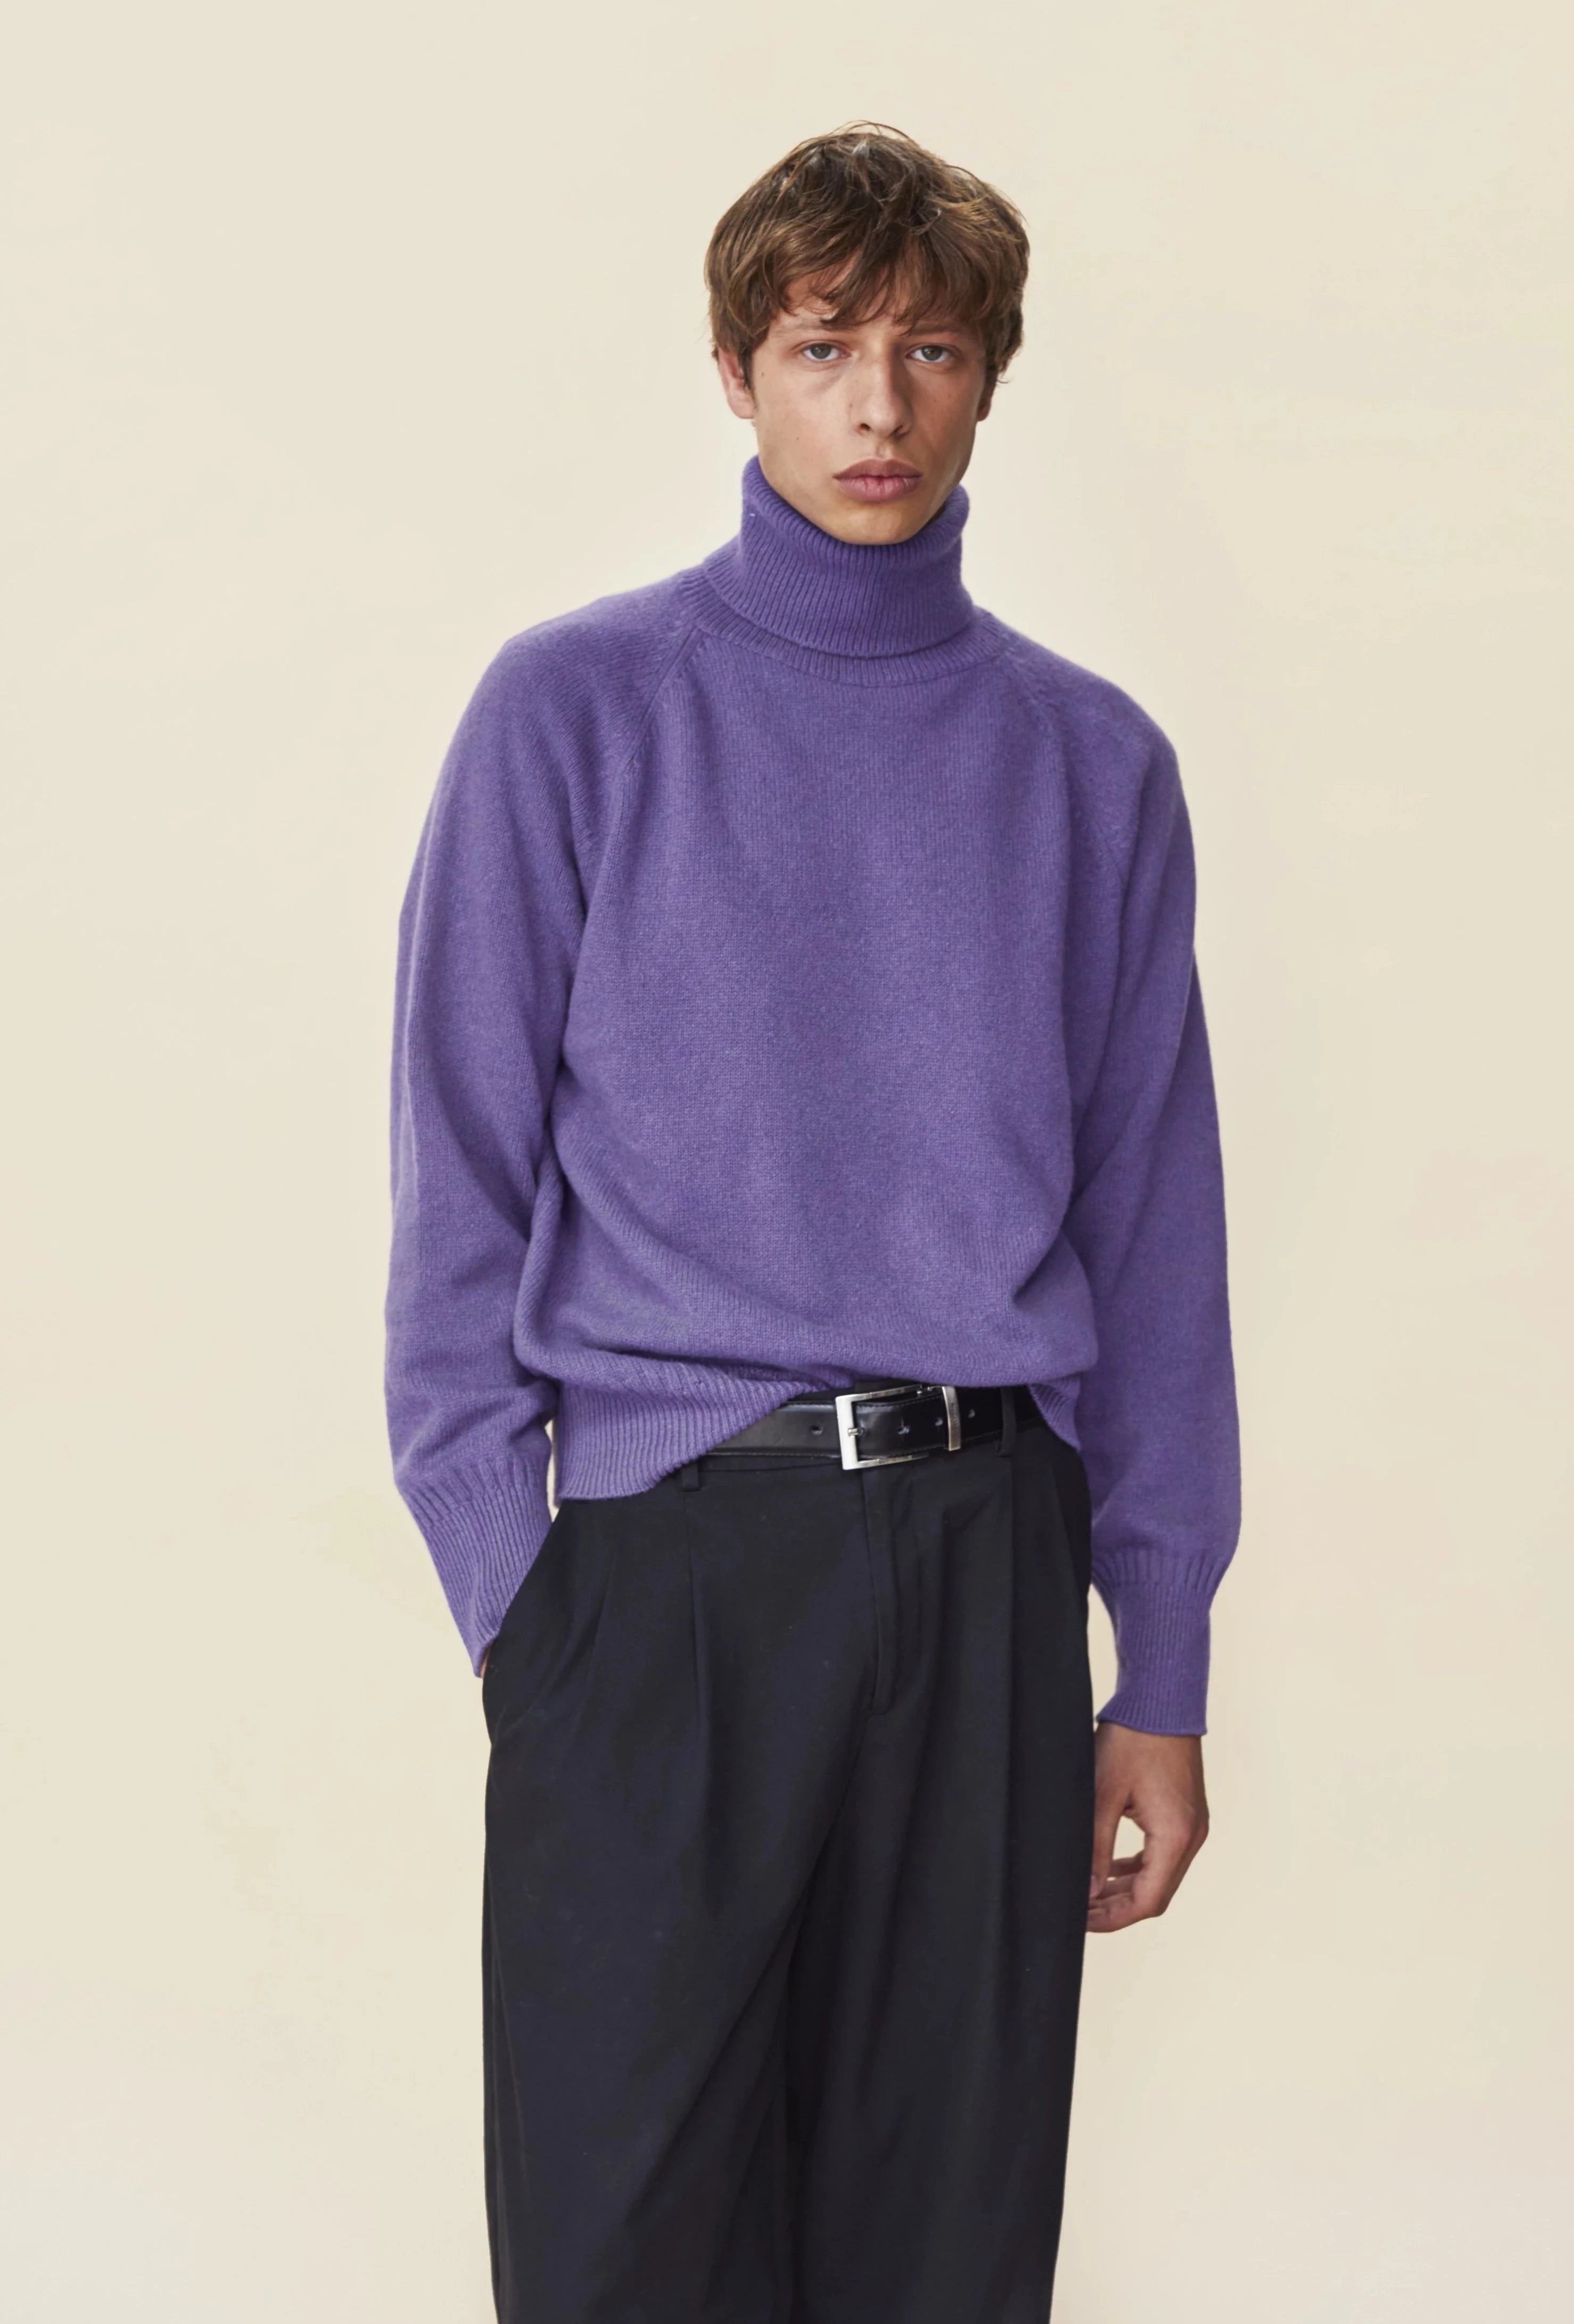 Men's purple turtleneck Cashmere